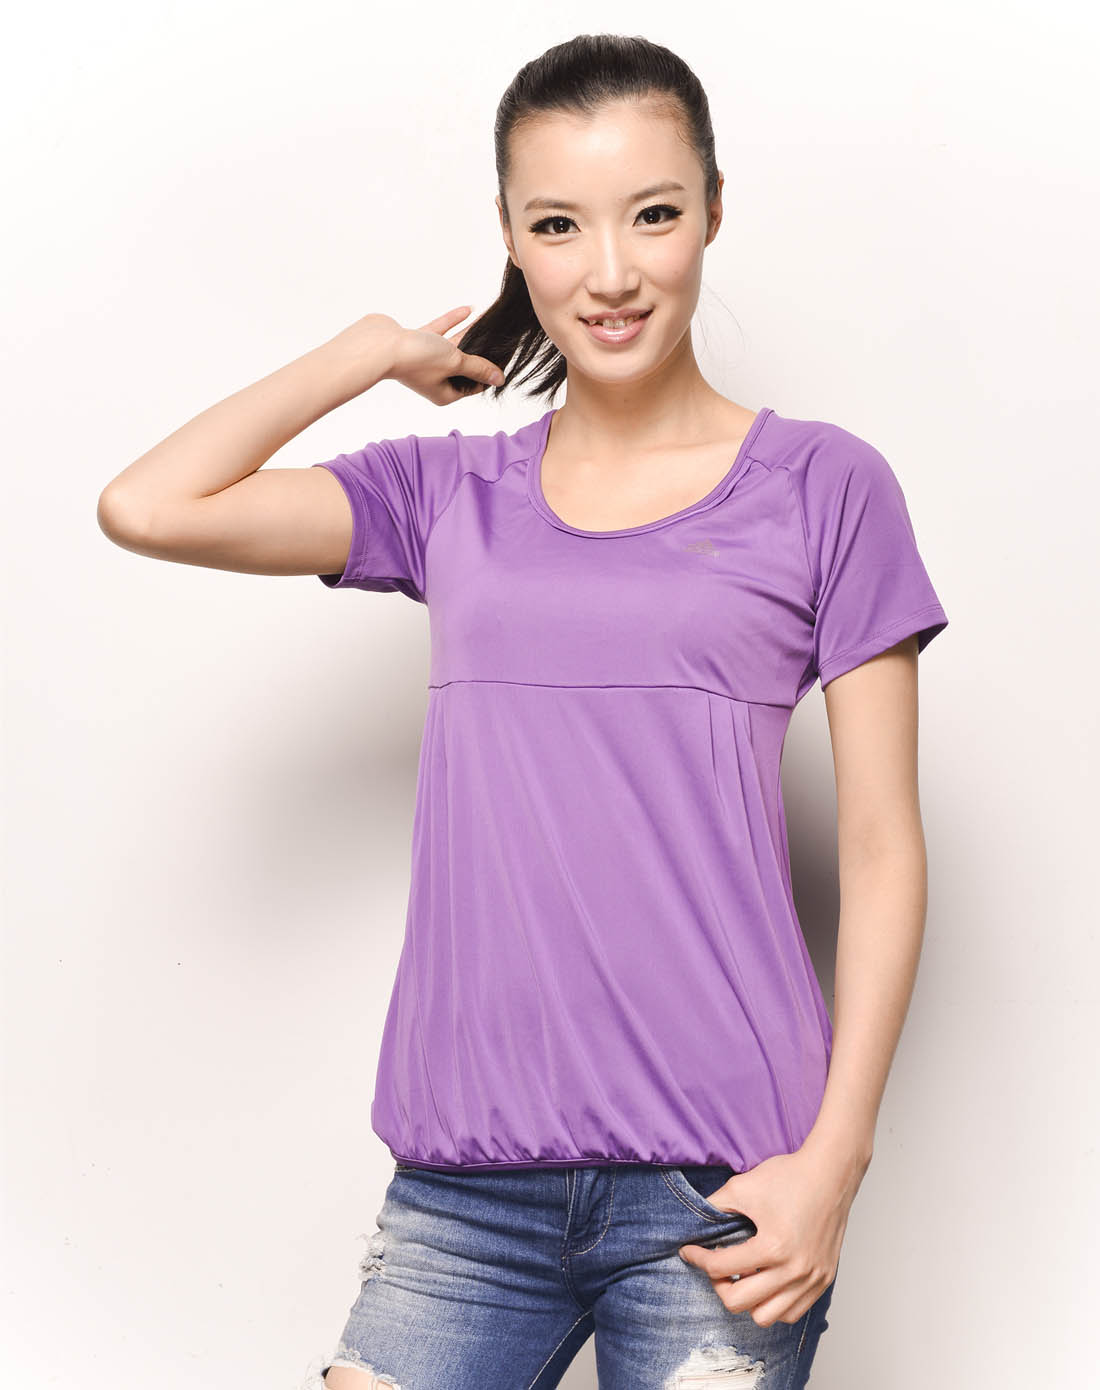 女子紫色短袖t恤